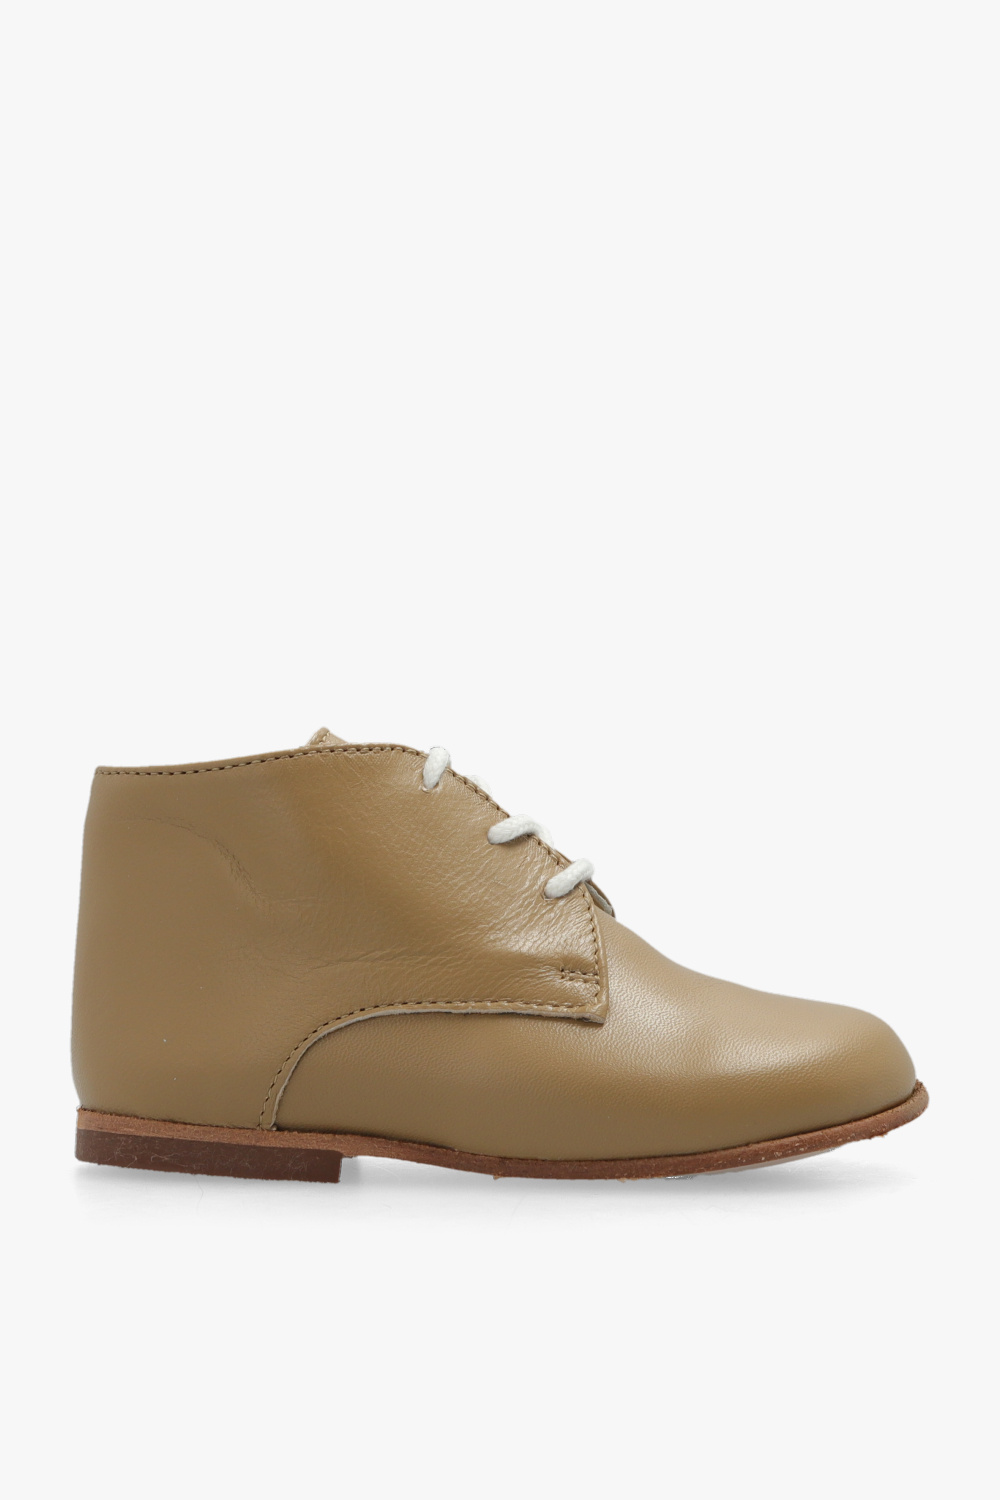 Bonpoint  ‘Joyau’ leather ankle boots